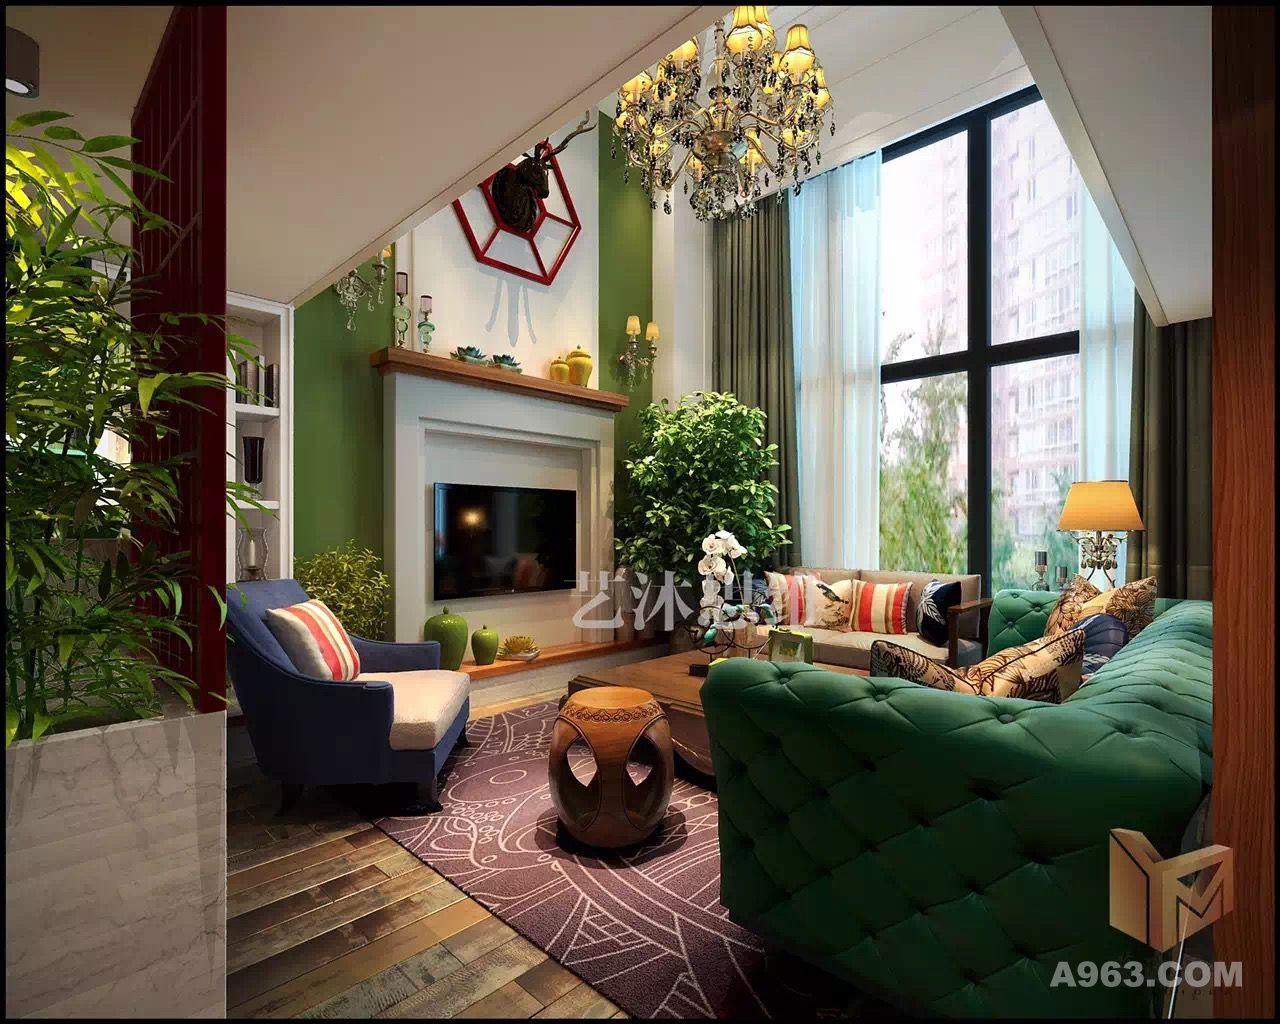    客厅里，有现场定制的美式壁炉和展示柜，后期定制的美式沙发，还有定制的中式窗棂，后期定制的中式沙发，再搭配欧式的鹿头，中西合璧，融合多元素文化。
   用休闲的地板衬底，绿色的墙面再搭配红色的中式窗棂挑色，形成了强烈的反差。色彩很张扬，但使人感觉到休闲、舒服、放松，是朋友聚会的不二选择。